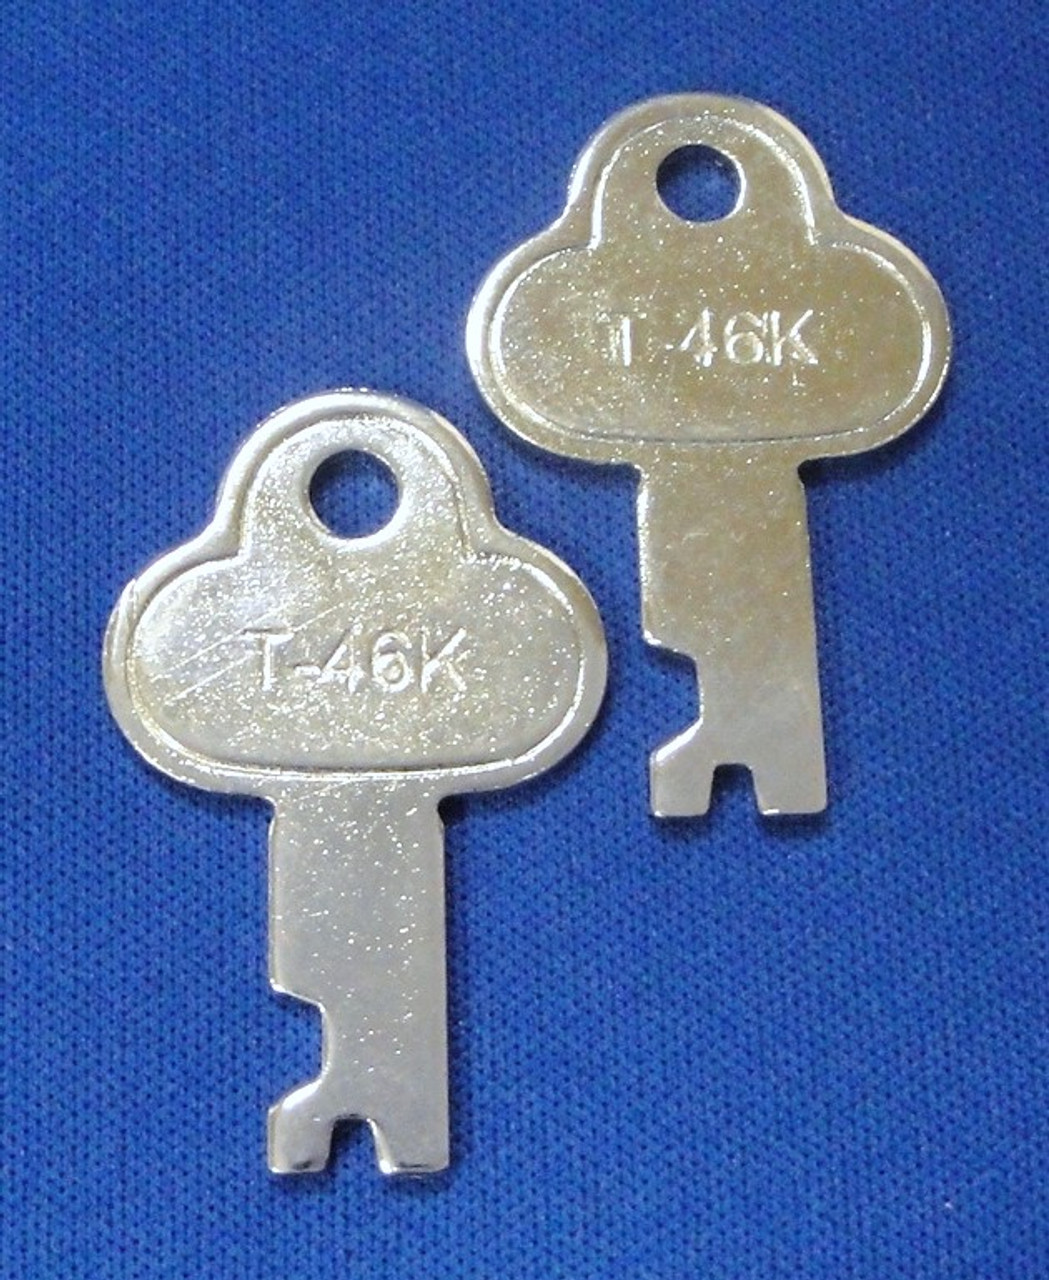 T46 Trunk Footlocker Key 2 Pack